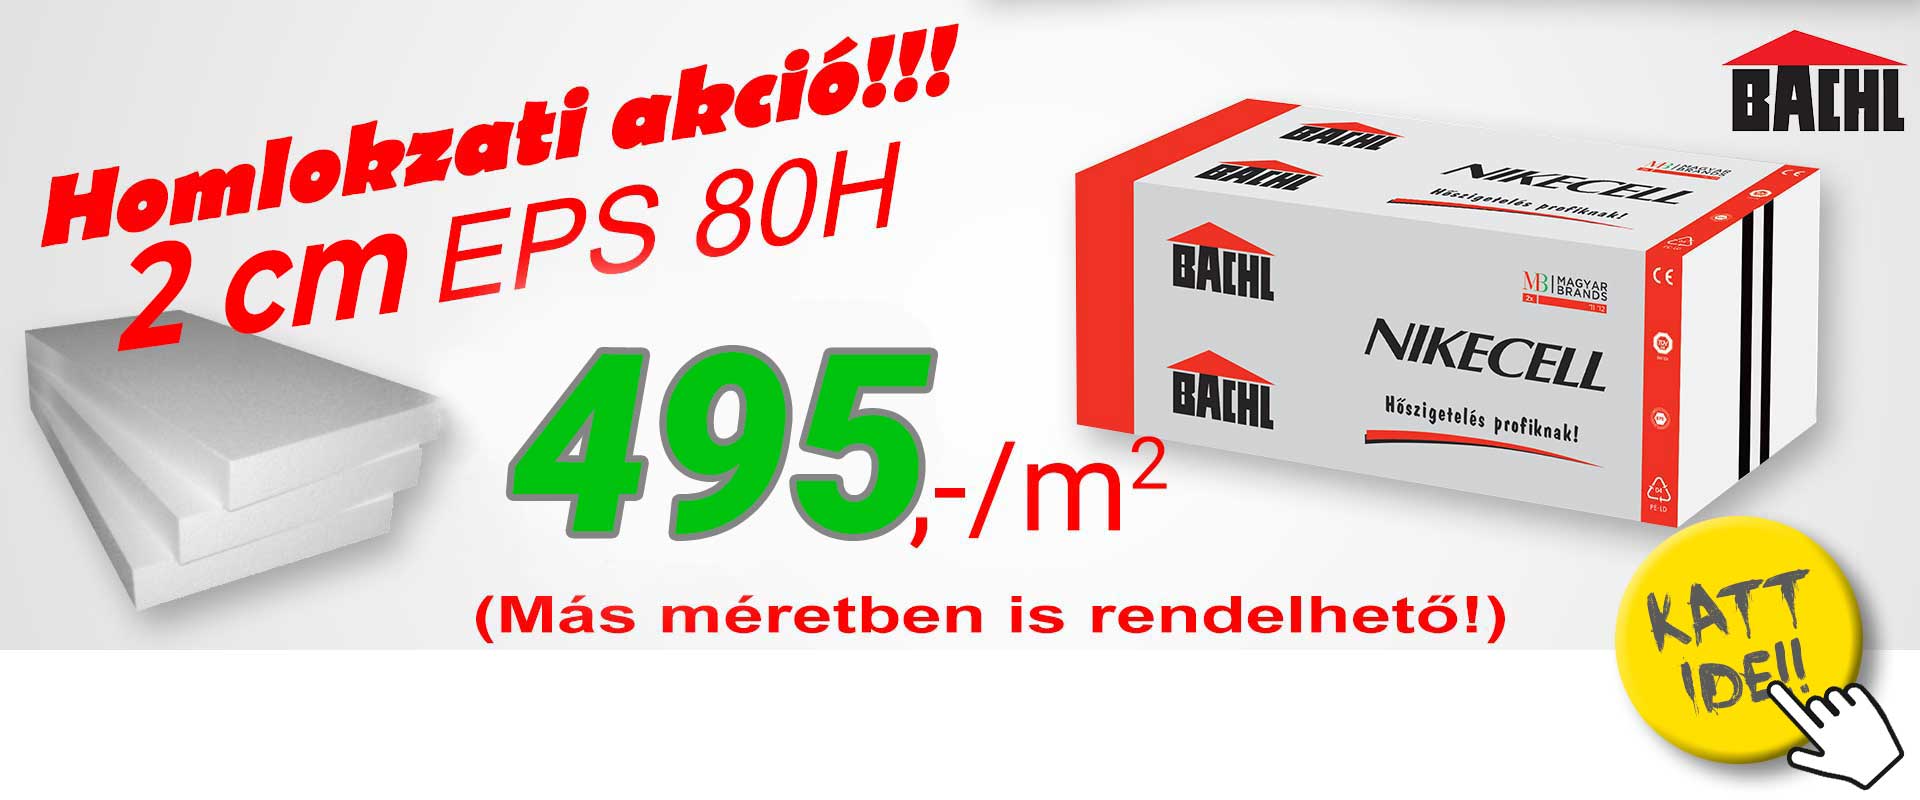 BACHL Nikecell EPS 80H homlokzati hőszigetelő lemez